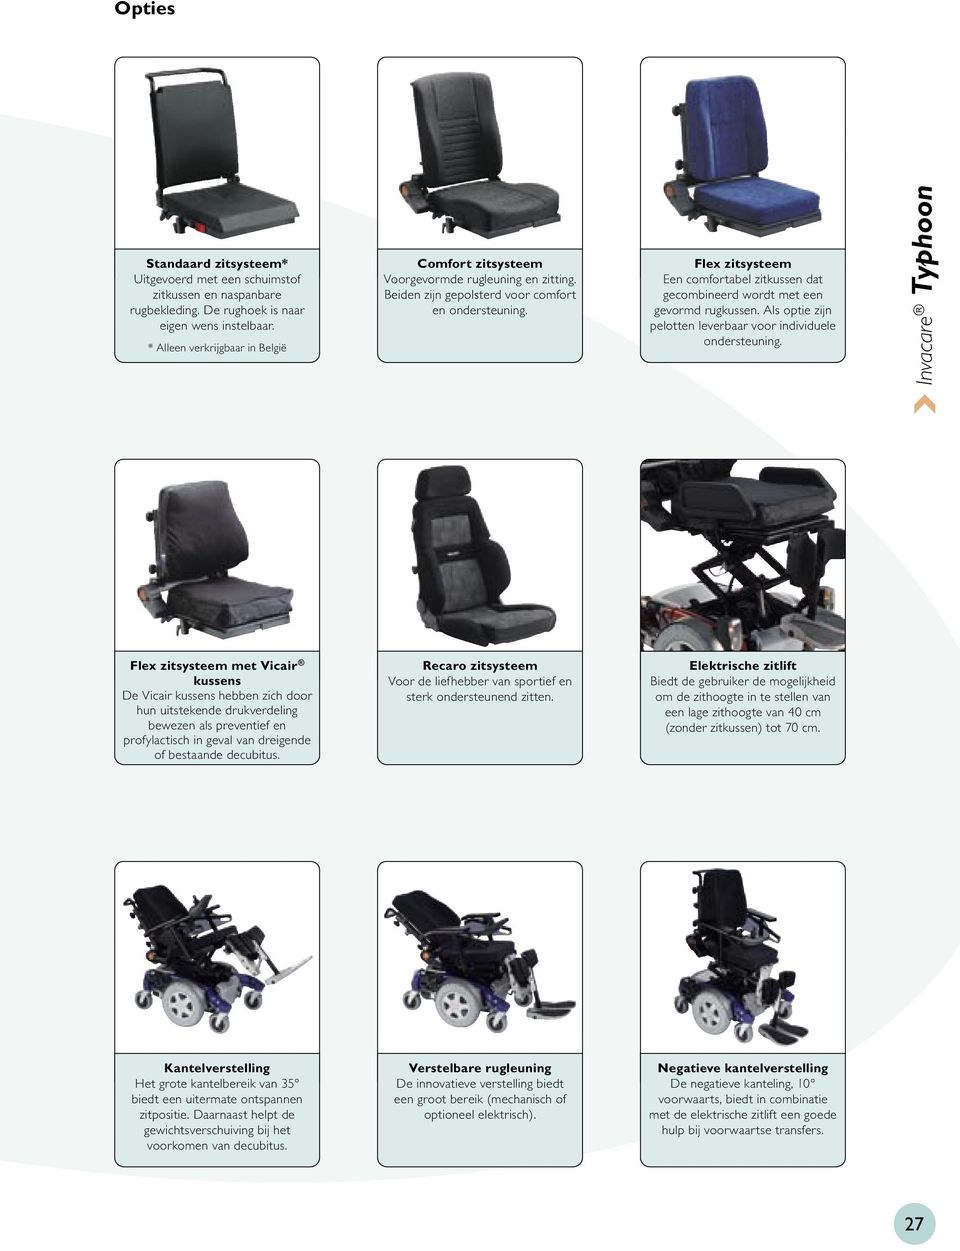 Flex zitsysteem Een comfortabel zitkussen dat gecombineerd wordt met een gevormd rugkussen. Als optie zijn pelotten leverbaar voor individuele ondersteuning.